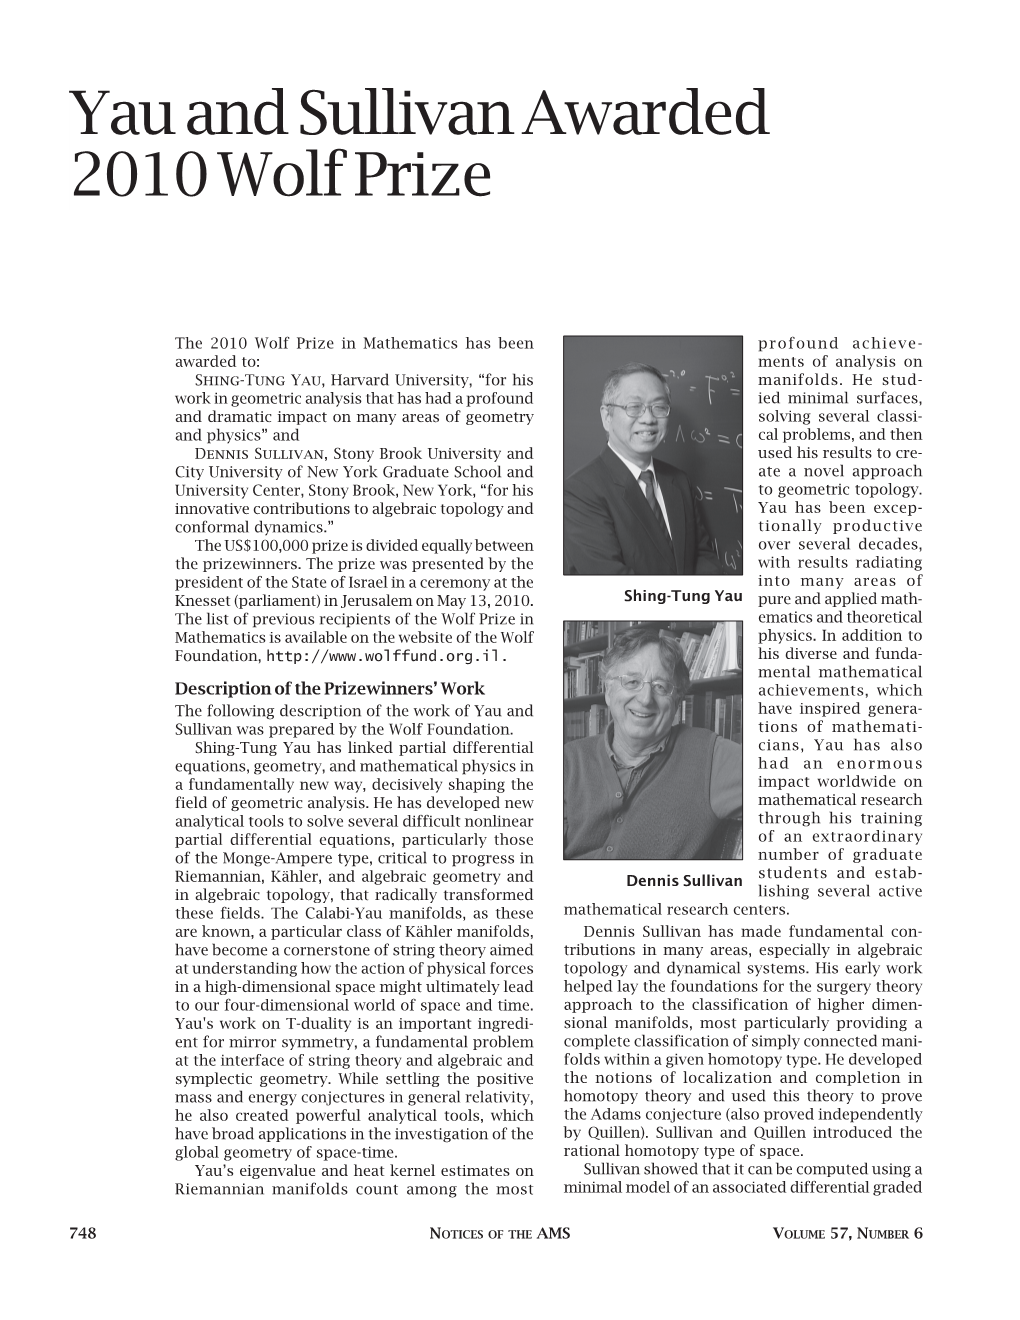 Yau and Sullivan Awarded 2010 Wolf Prize